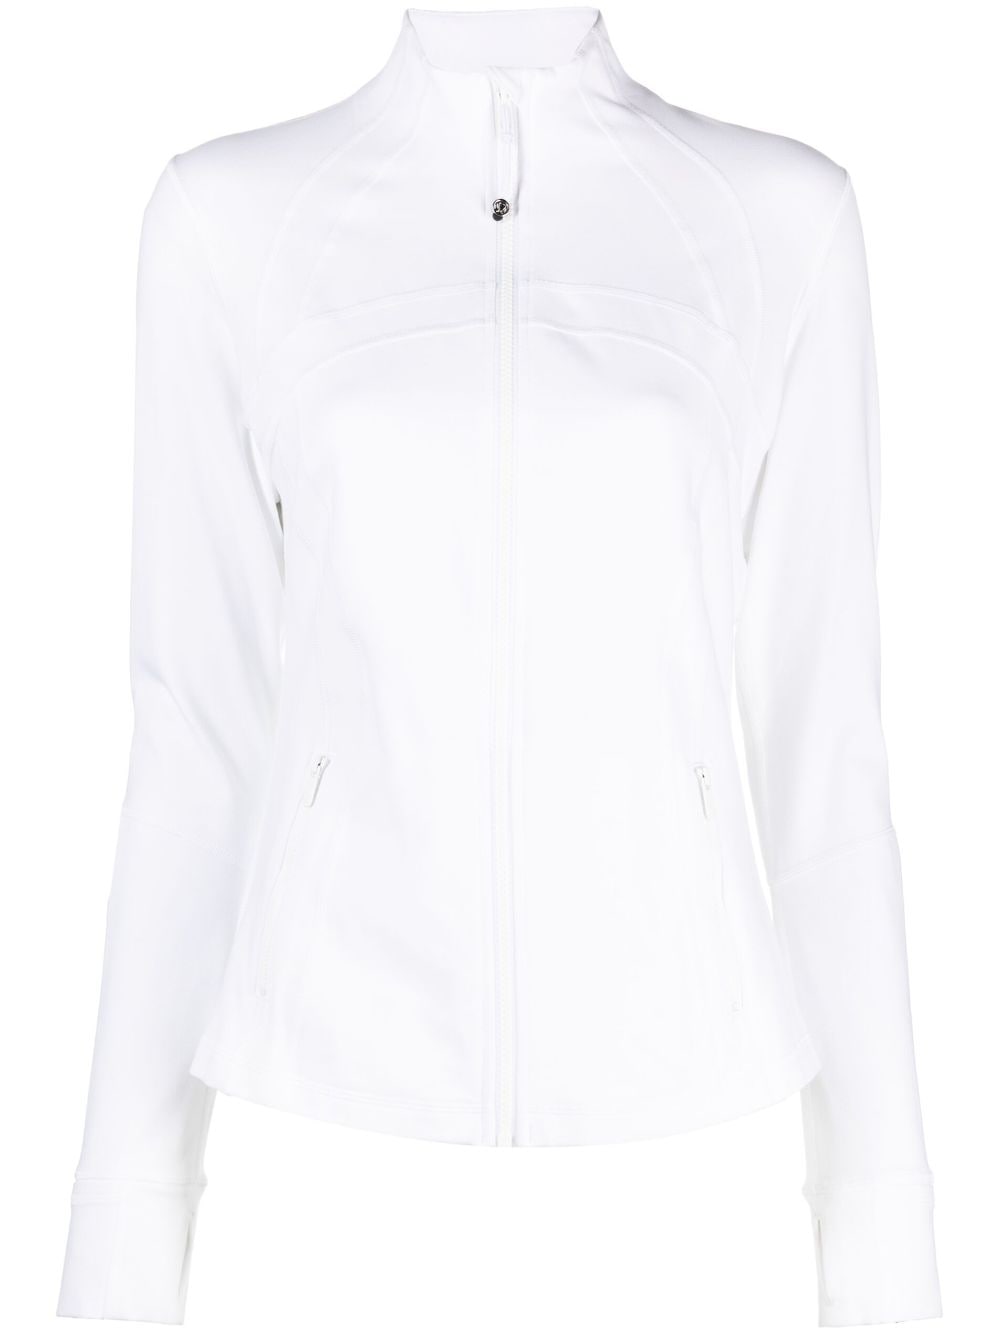 lululemon athletica, Jackets & Coats, Lululemon Shape Up High Neck Full  Zip Jacket Cranberry Color